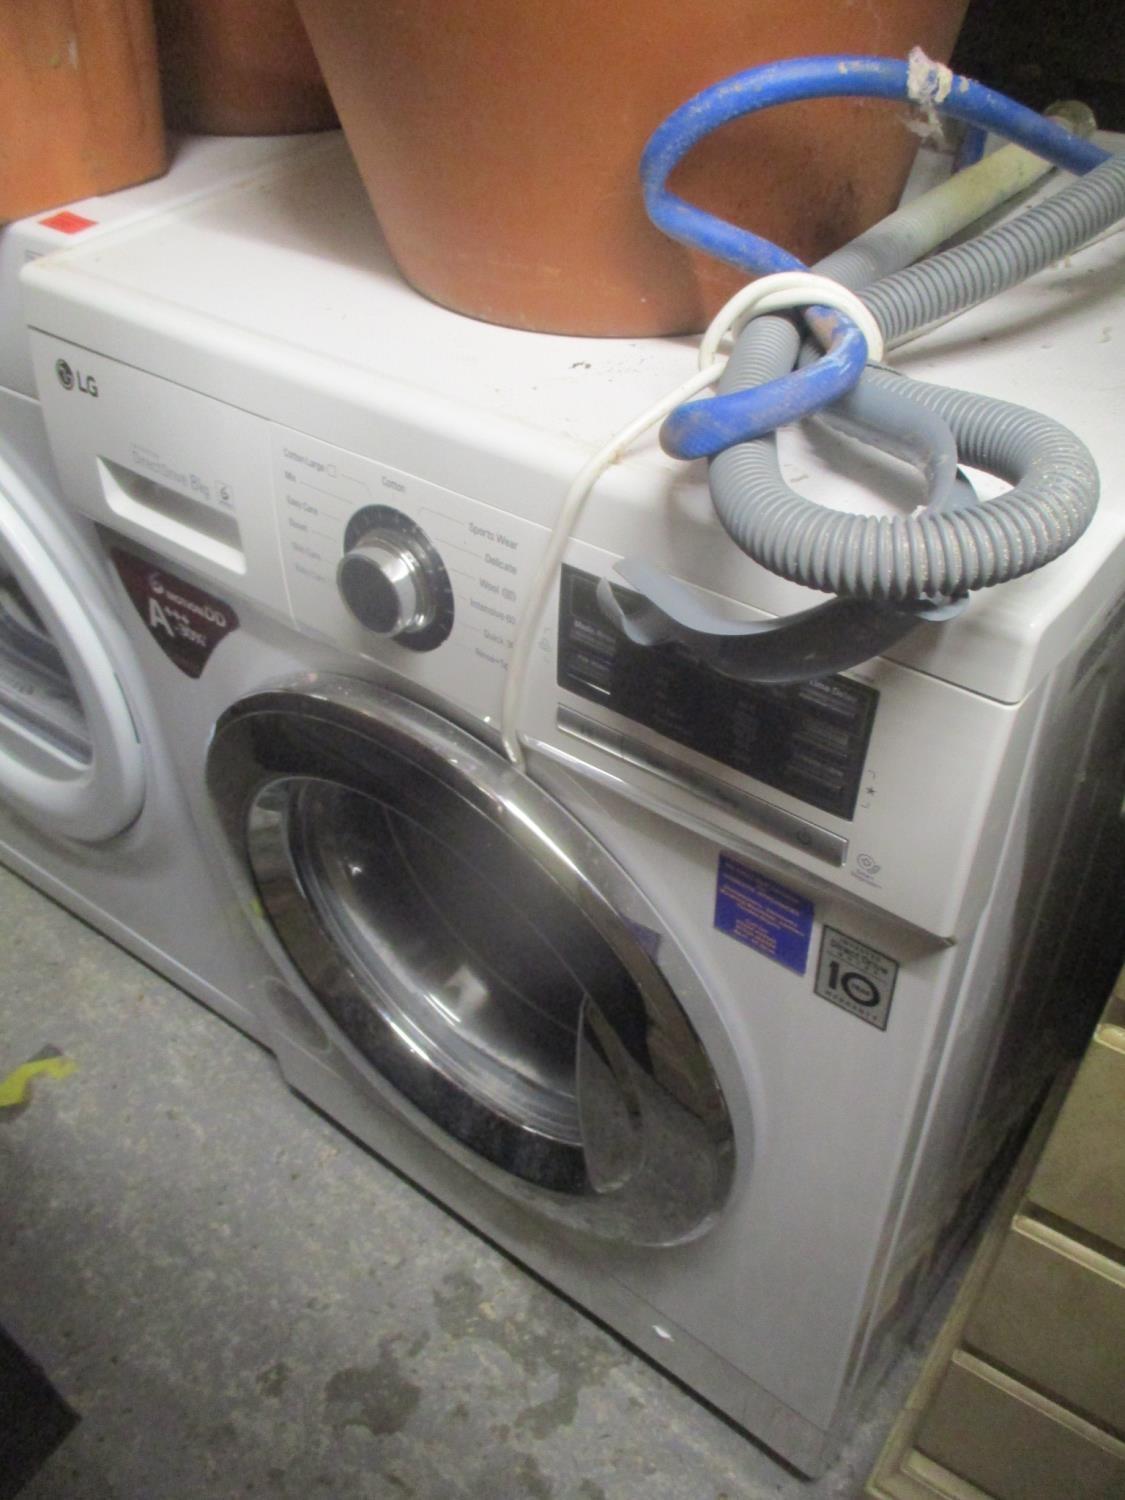 An LG Direct Drive washing machine 33 1/2"h x 23 1/4"w